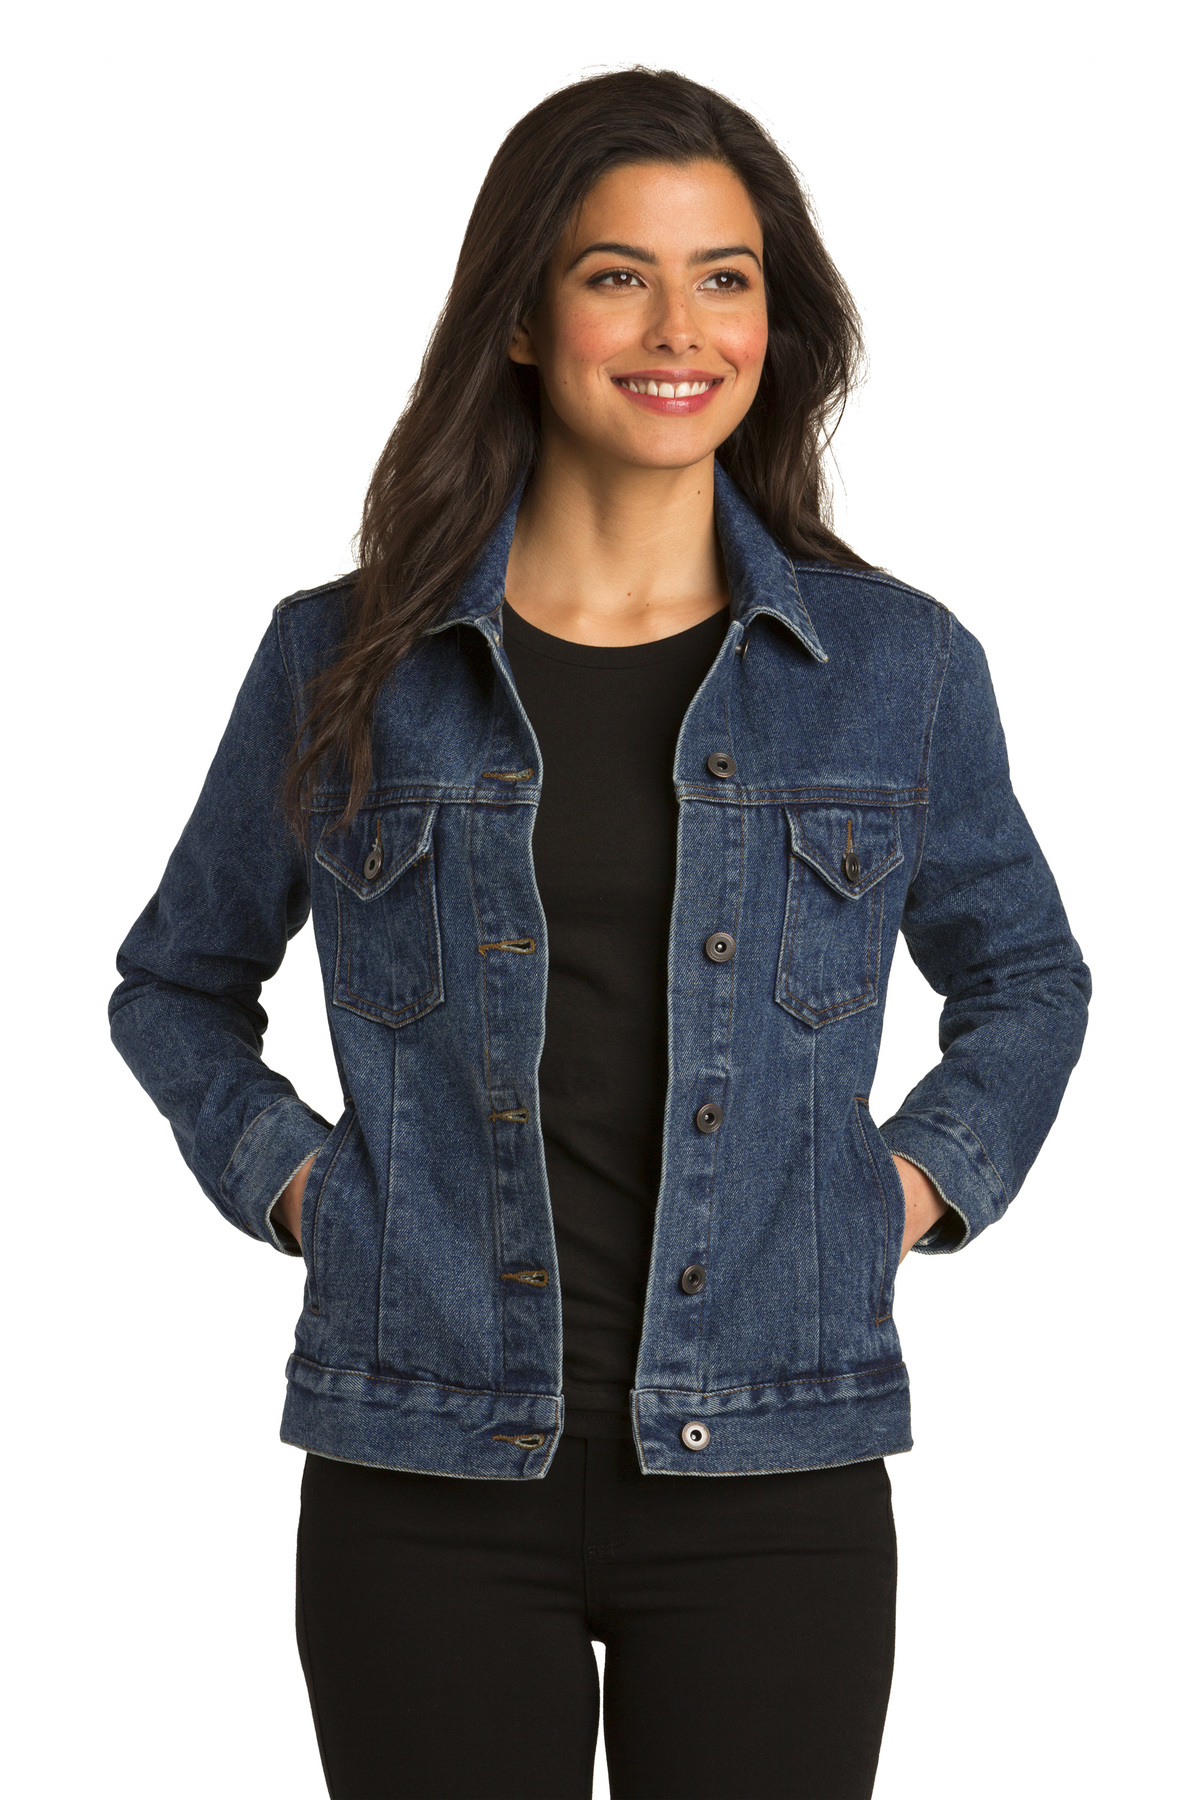 LA CASA Denim Jacket For Women - Full Sleeve Blue Jeans Jacket for Girl